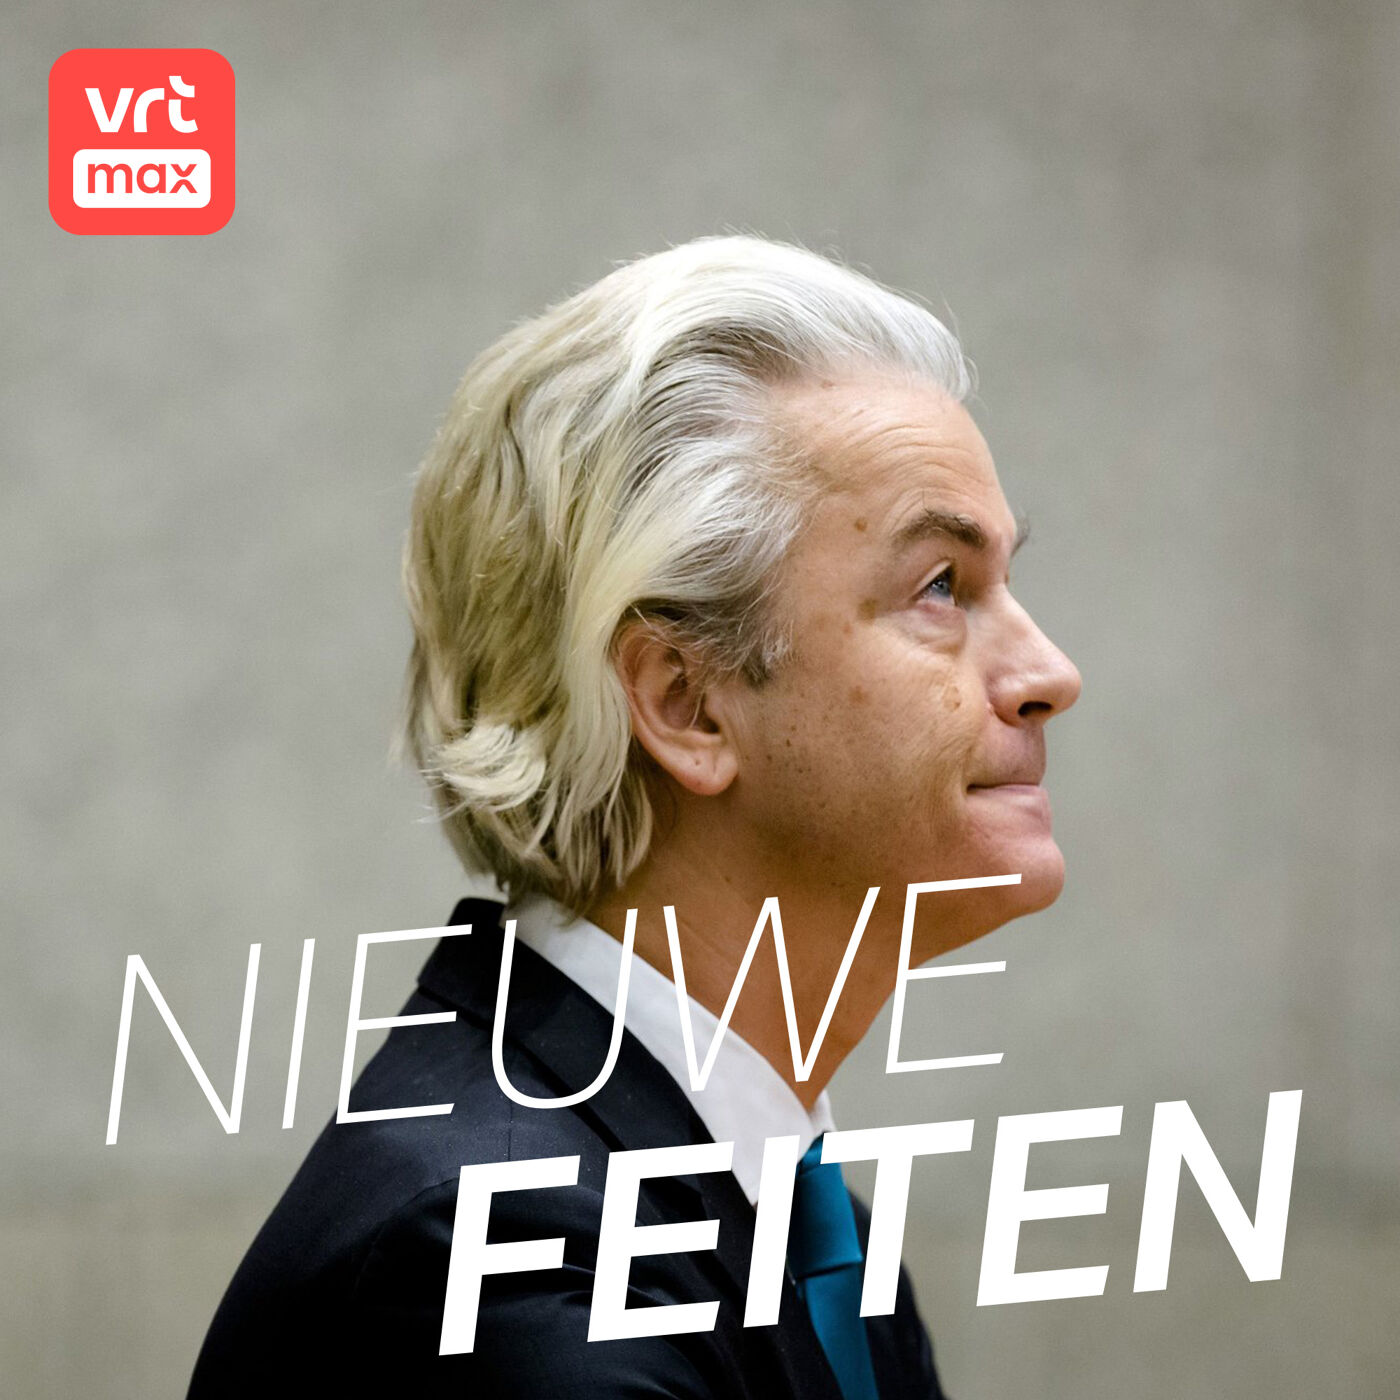 Wordt Geert Wilders de nieuwe Nederlandse premier?